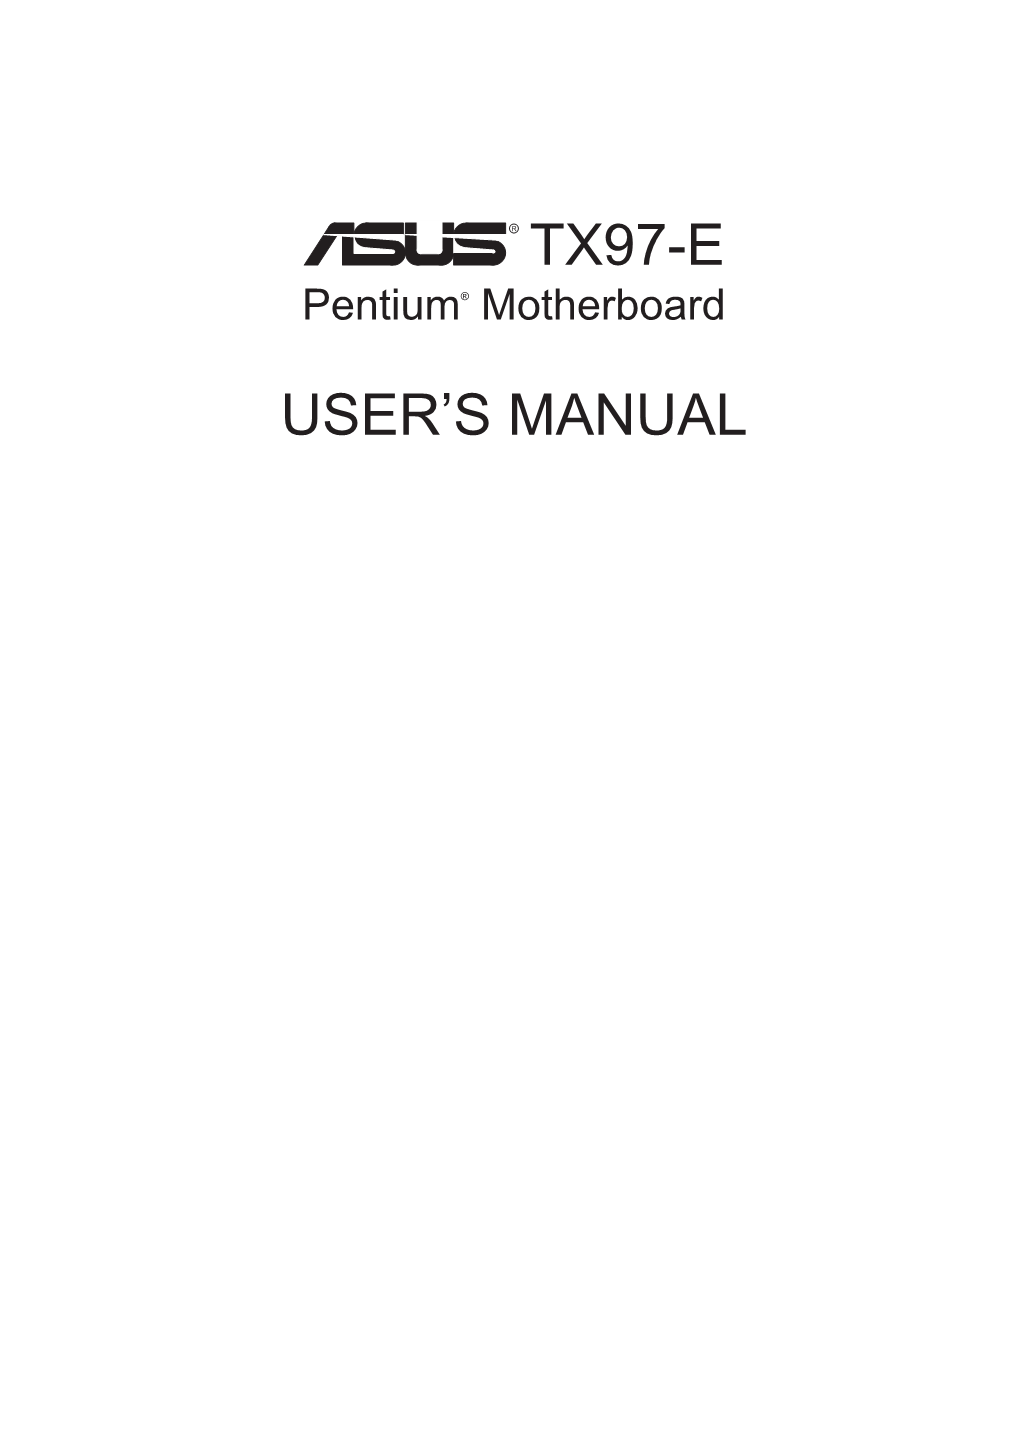 Tx97-E User's Manual